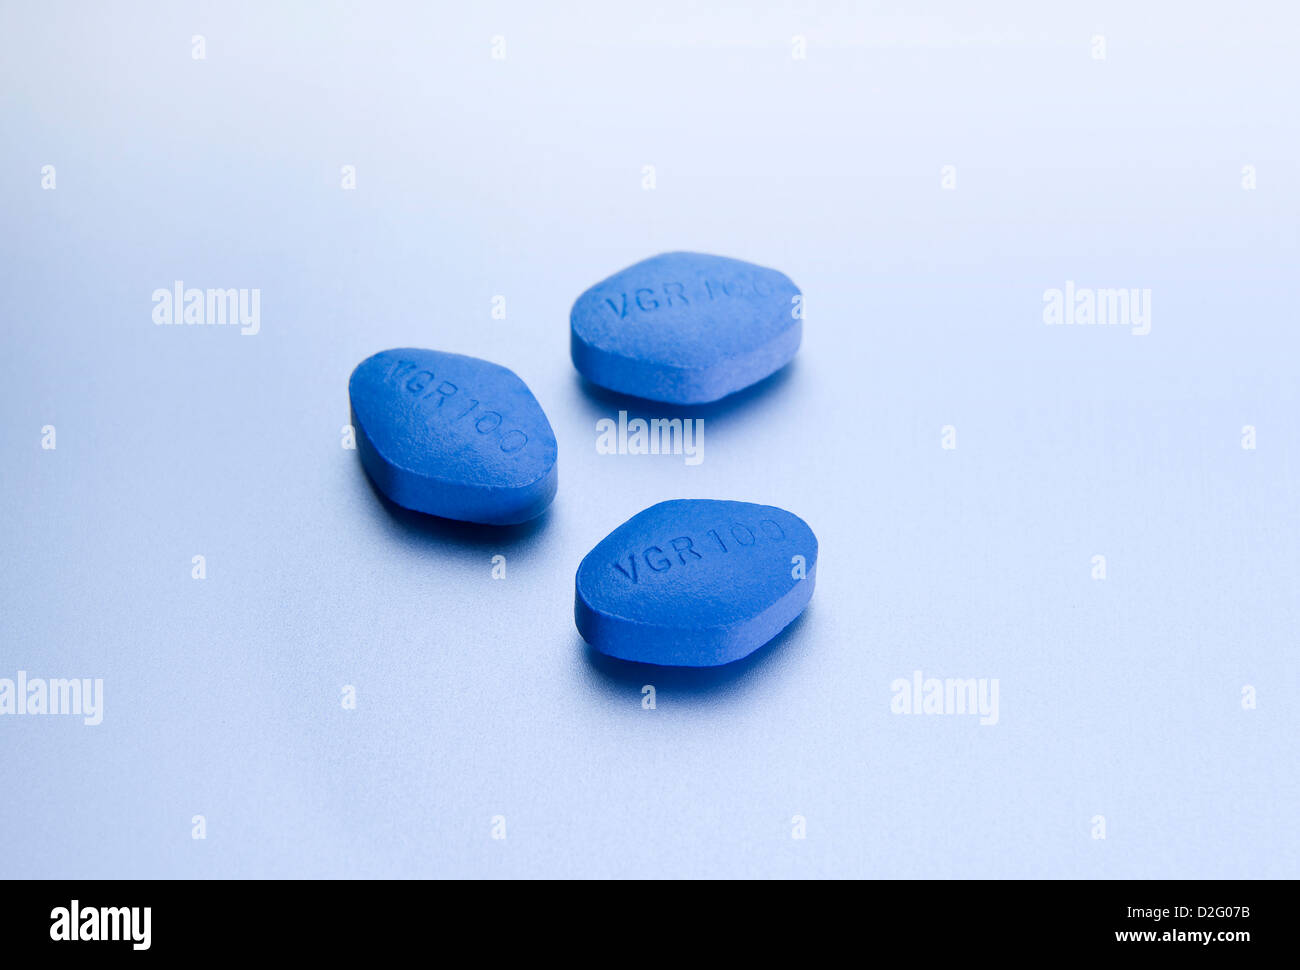 Detalle de cerca de 100 mg de Sildenafil Citrate Pfizer viagra pastillas que tratar la disfunción eréctil, en un fondo plateado Foto de stock